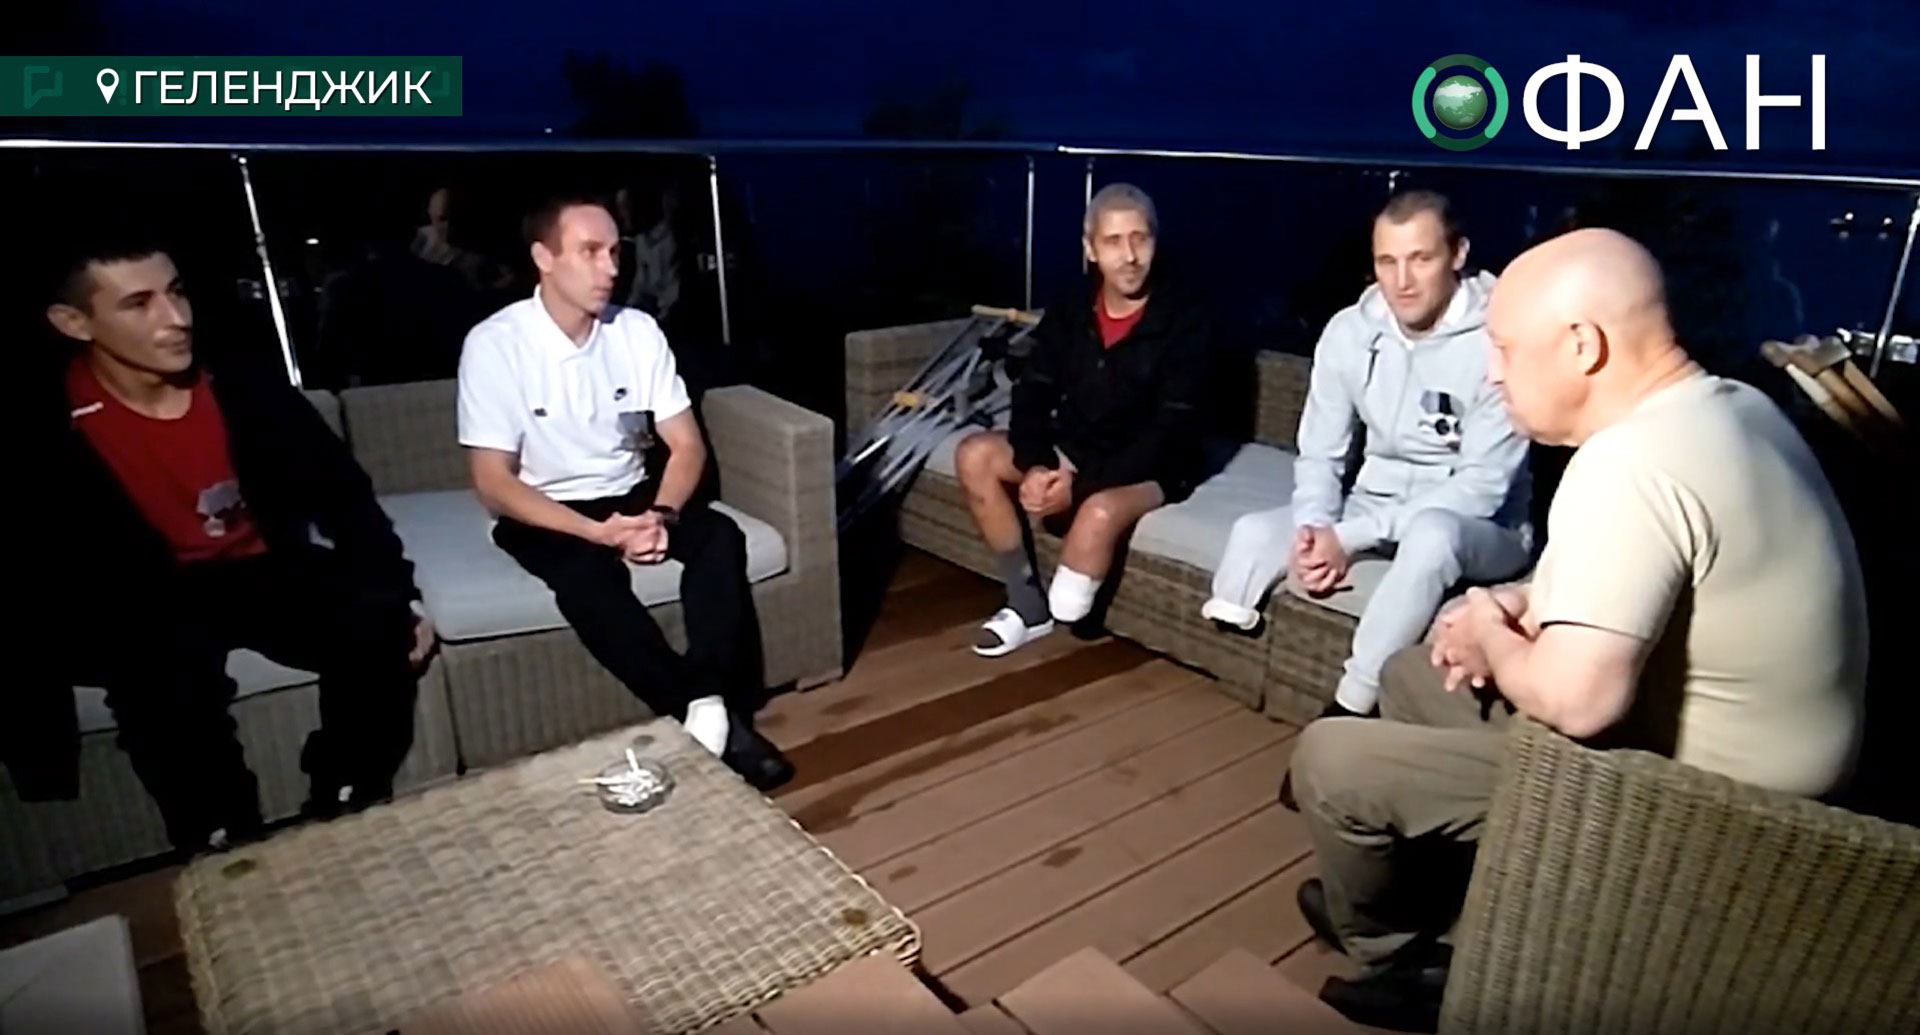 El fundador de Wagner, Yevgeny Prigozhin, sentado con cuatro combatientes convictos y Rustam Borovkov (a la izquierda) -uno de los hombres entrevistados por Reuters- en una azotea de un complejo turístico del Mar Negro el pasado octubre (RIA FAN en VKontakte)